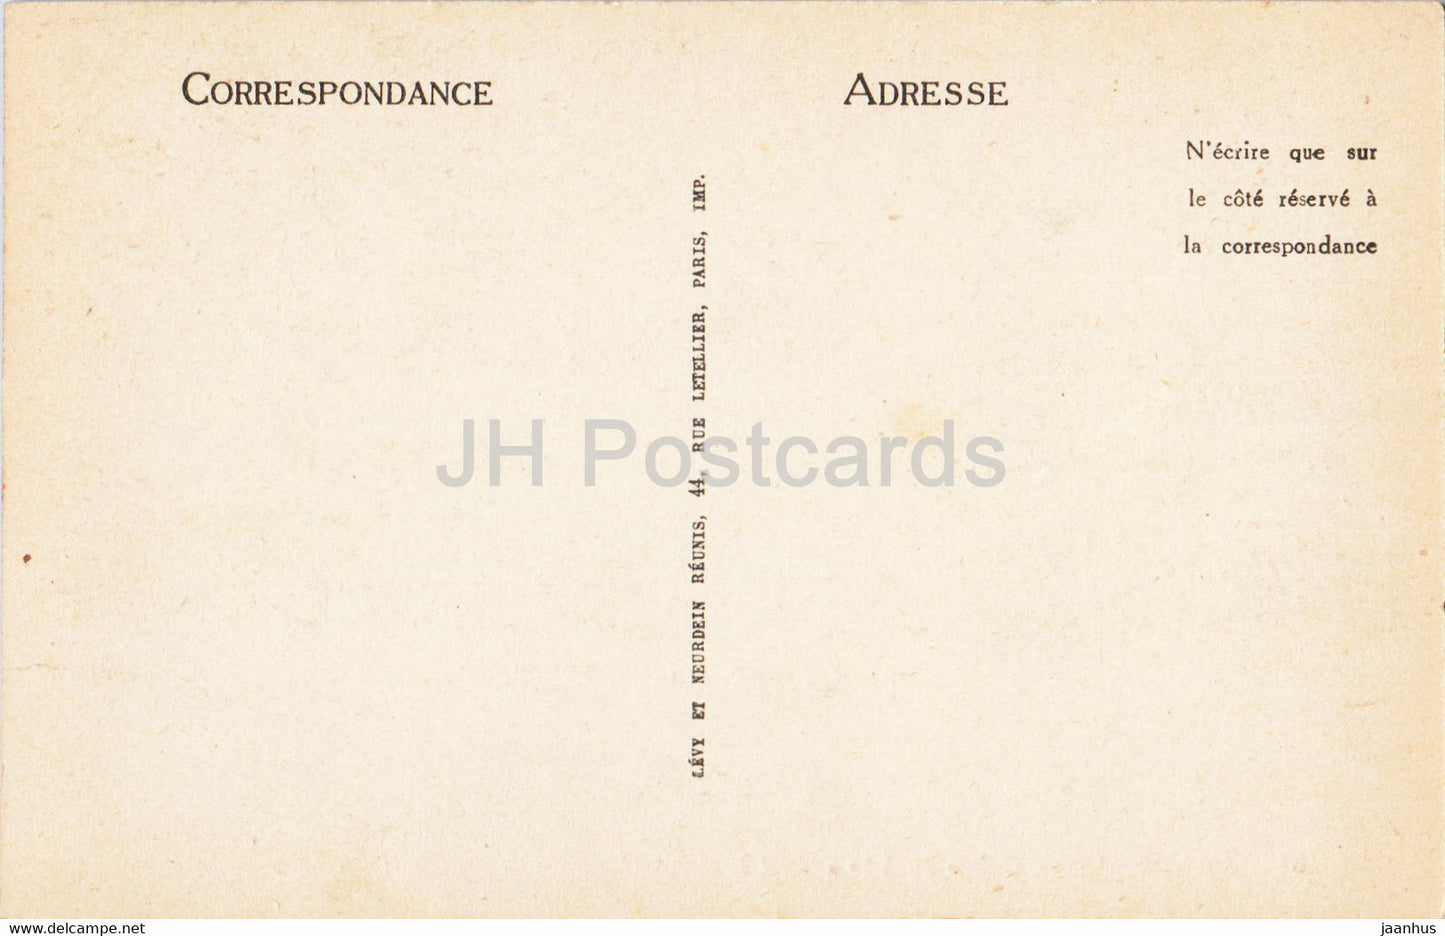 Langeais - Coffre du XV - 55 - carte postale ancienne - France - inutilisée